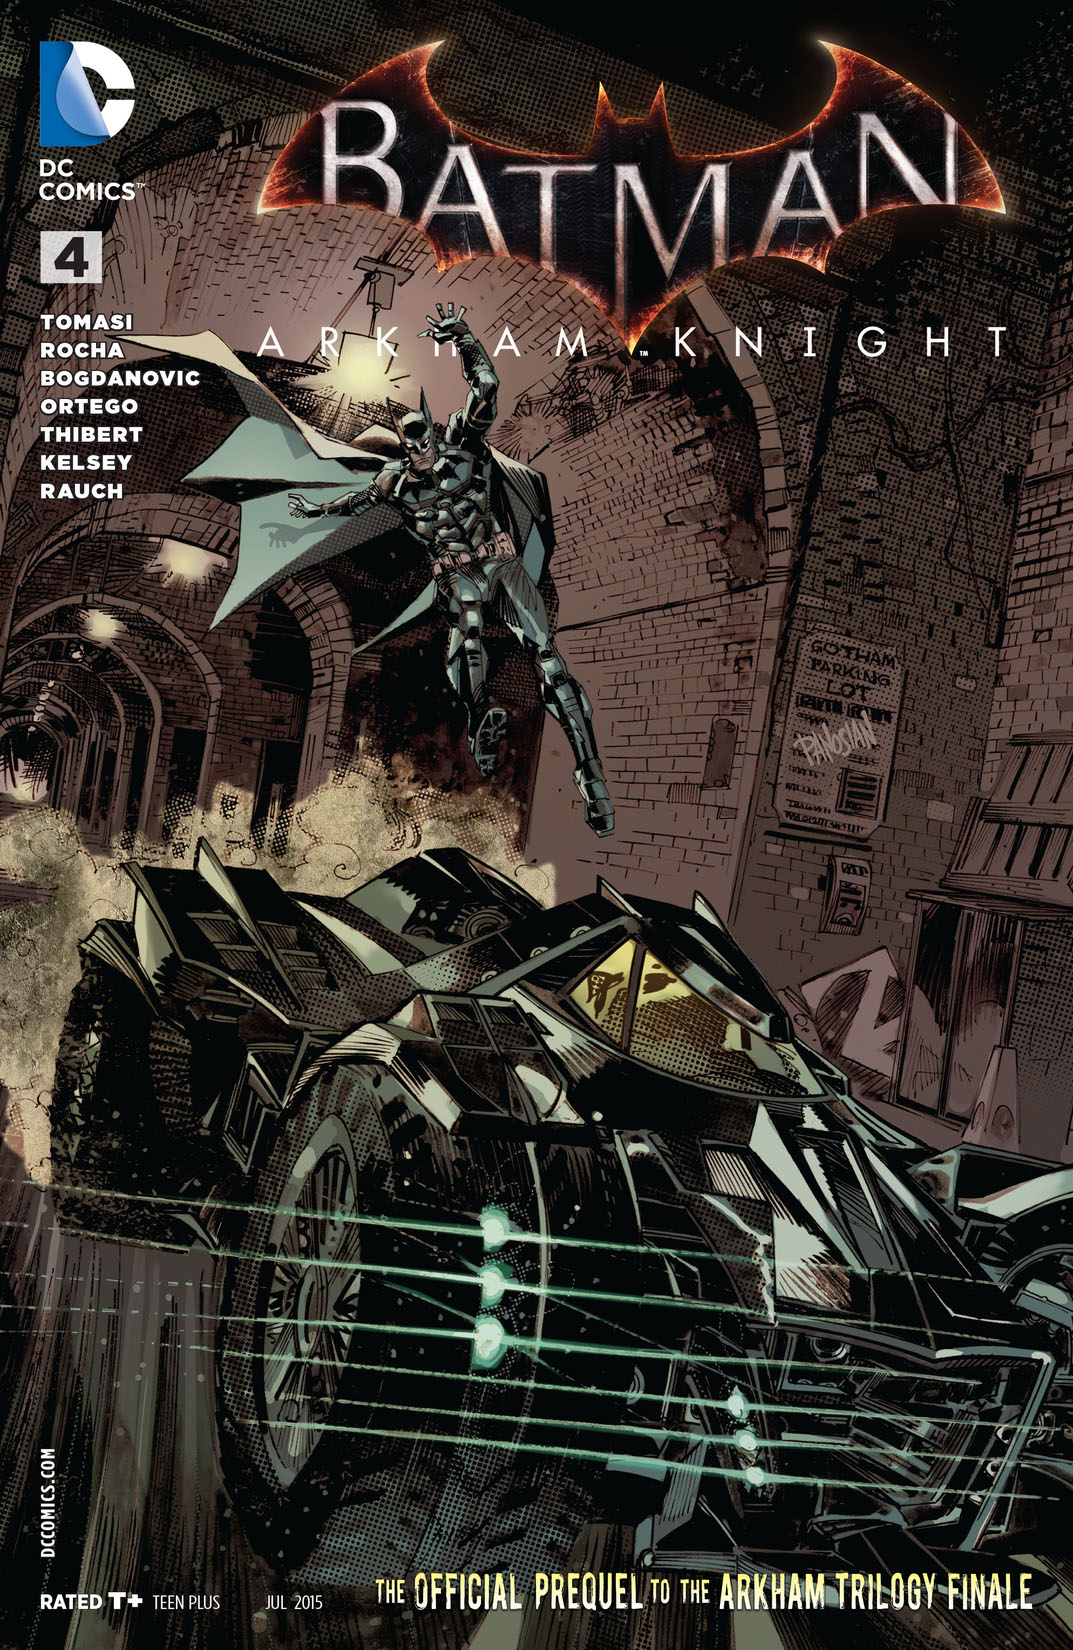 Batman: Arkham Knight #4 preview images